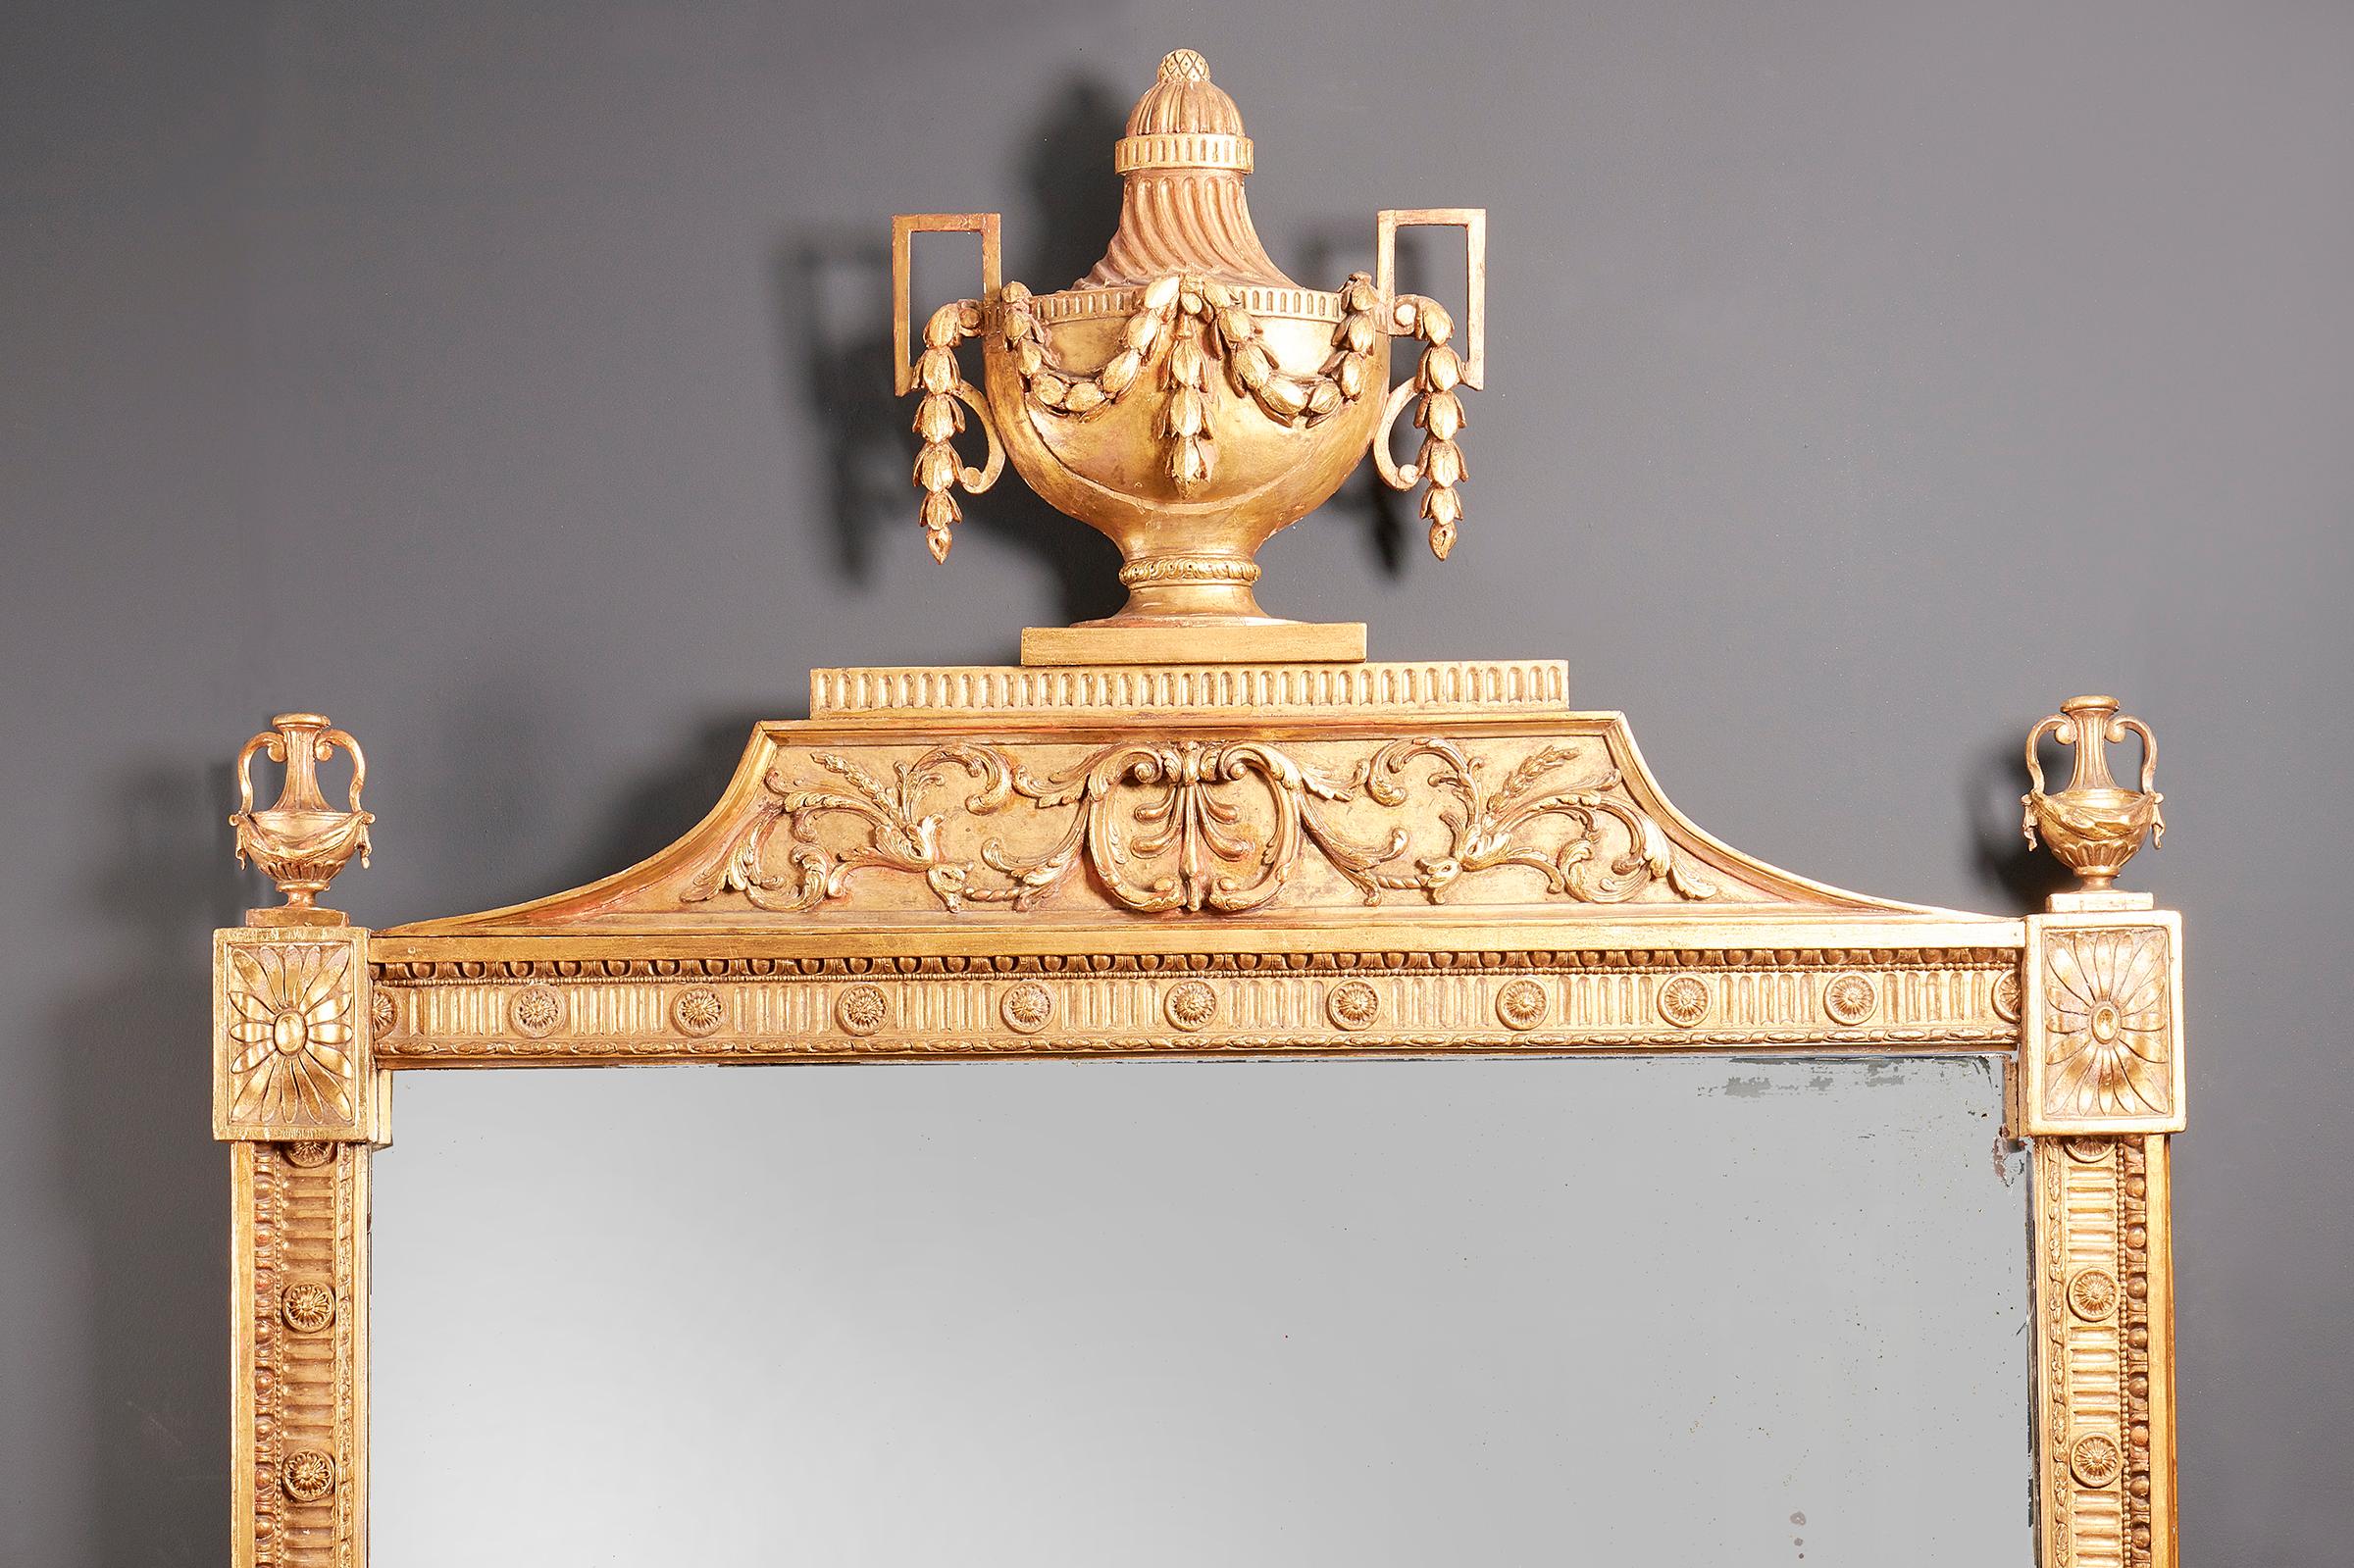 Ein feiner Spiegel aus vergoldetem Holz von Georg III., um 1775-1800, von großer Größe, der Rahmen mit einem Blumenkopf in jeder Ecke, die oberen Ecken von klassischen Urnen überragt, die Oberseite mit einer großen klassischen Urne über einem